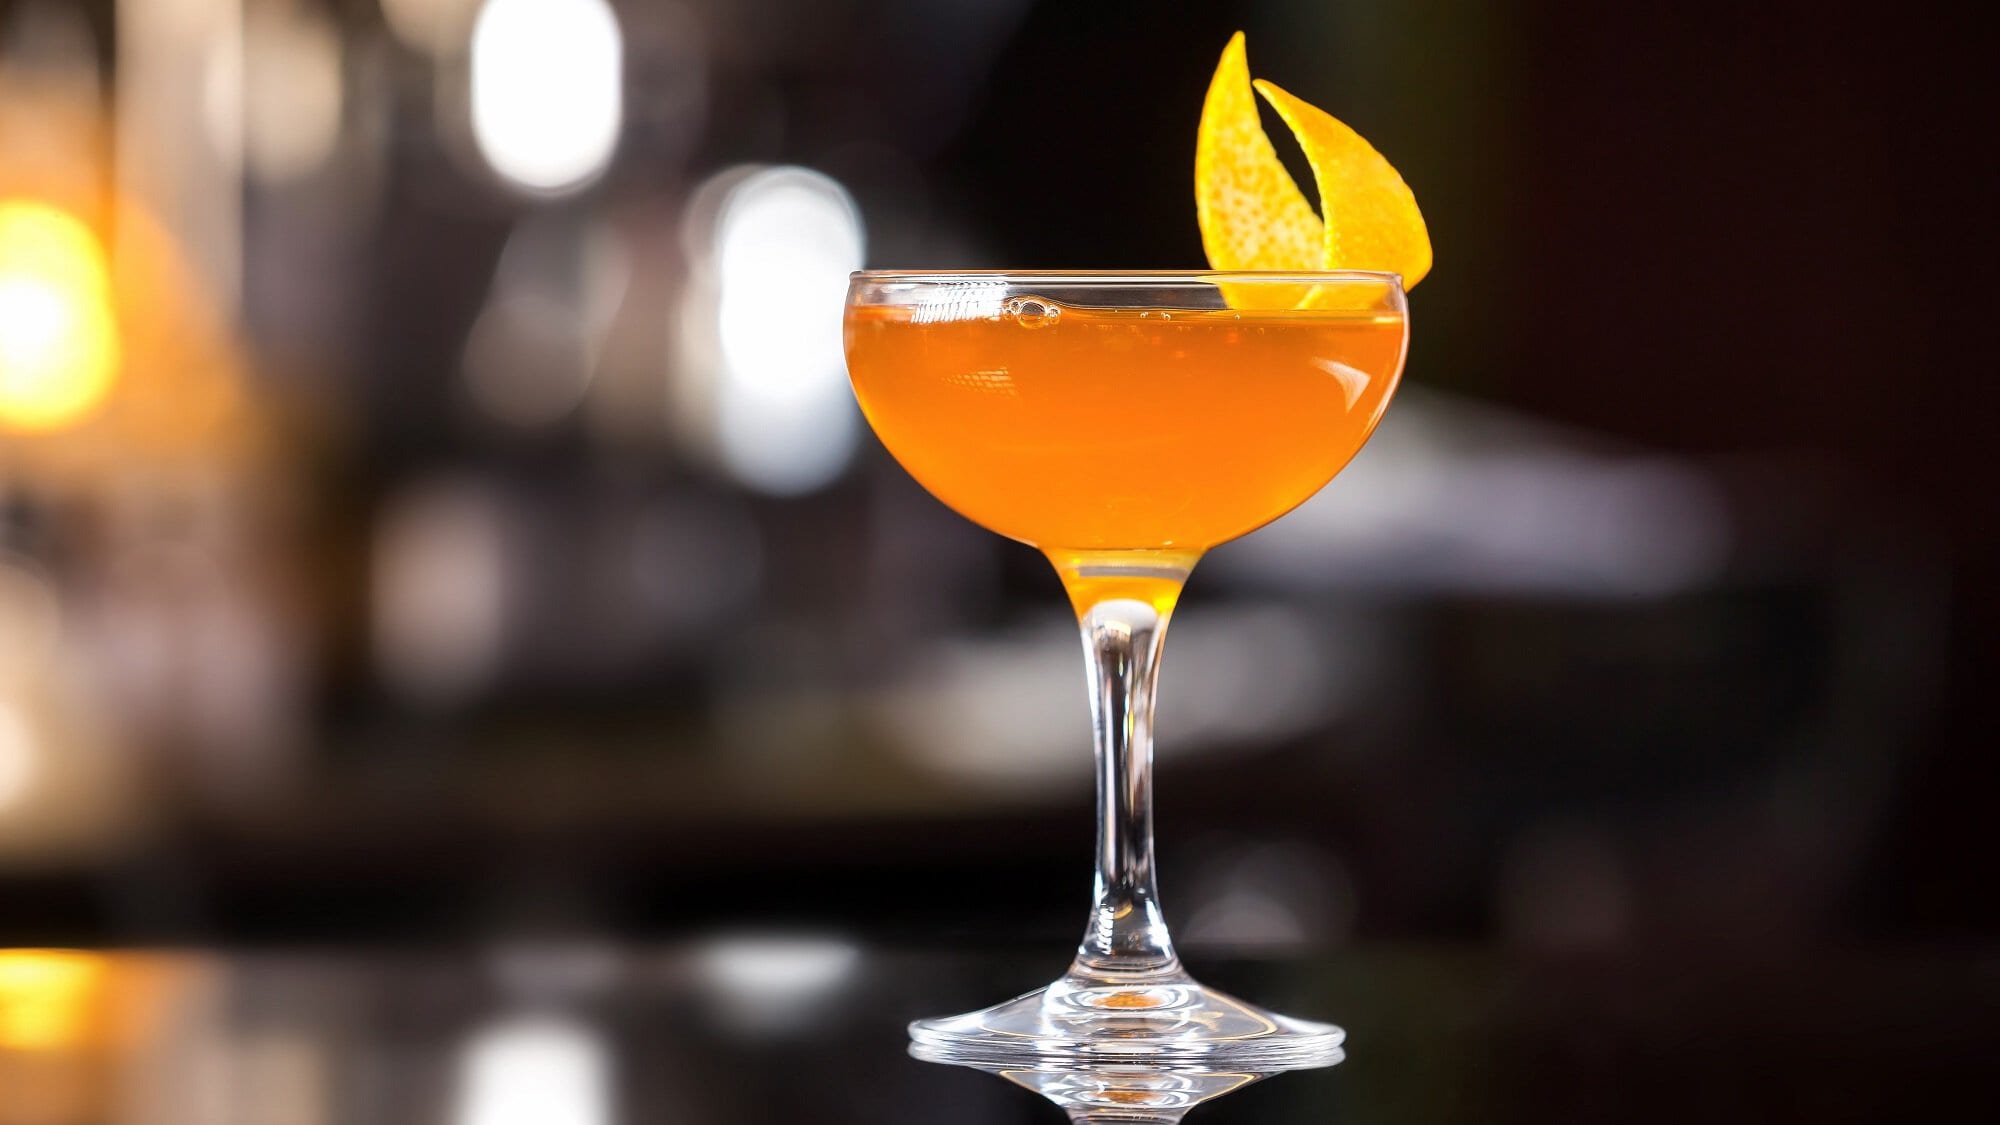 Ein Glas Italian Martini, ein orangefarbener Drink, dekoriert mit einer Zitronenzeste, in dunklem Bar-Ambiente.